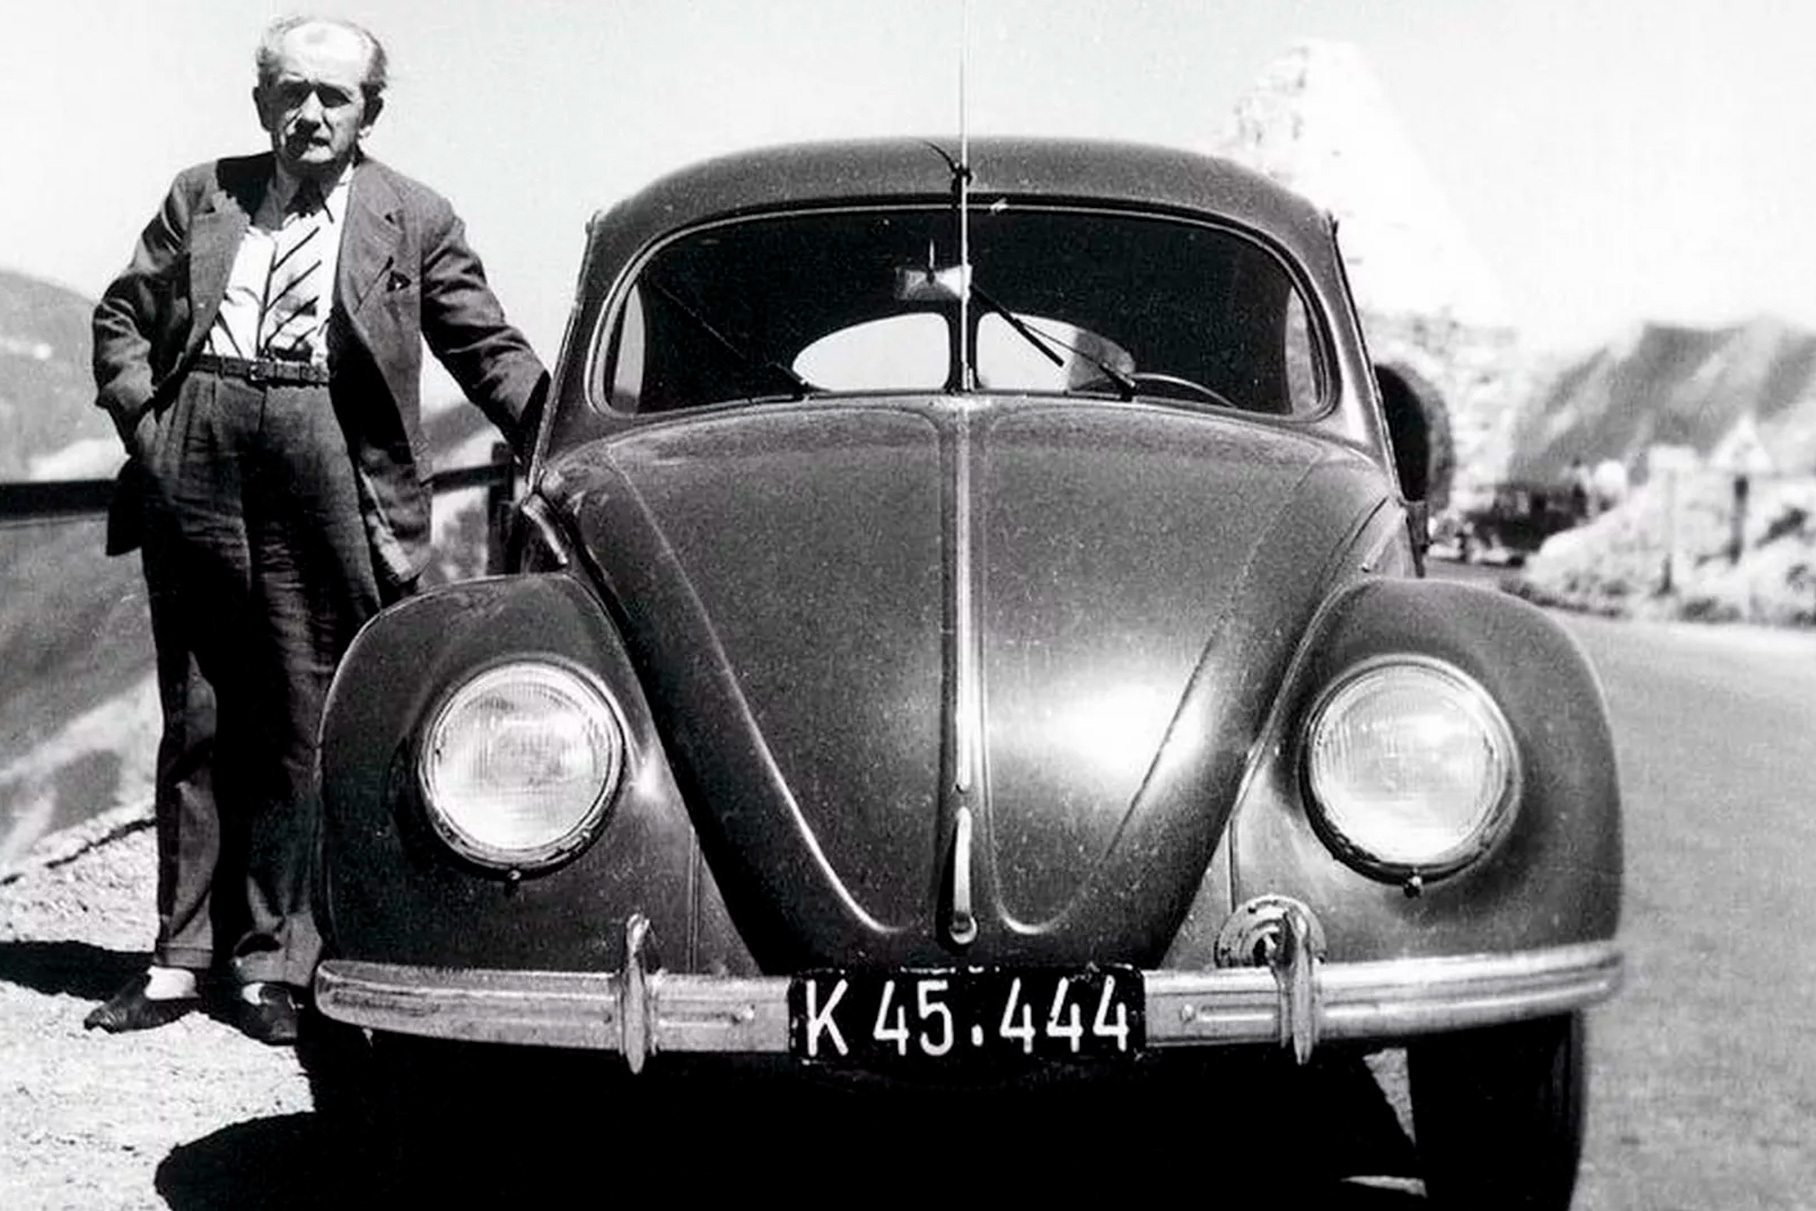 Конструктор Beetle Фердинанд Порше использовал агрегаты Volkswagen для своих первых моделей. Семейные связи при этом пронизывали обе компании